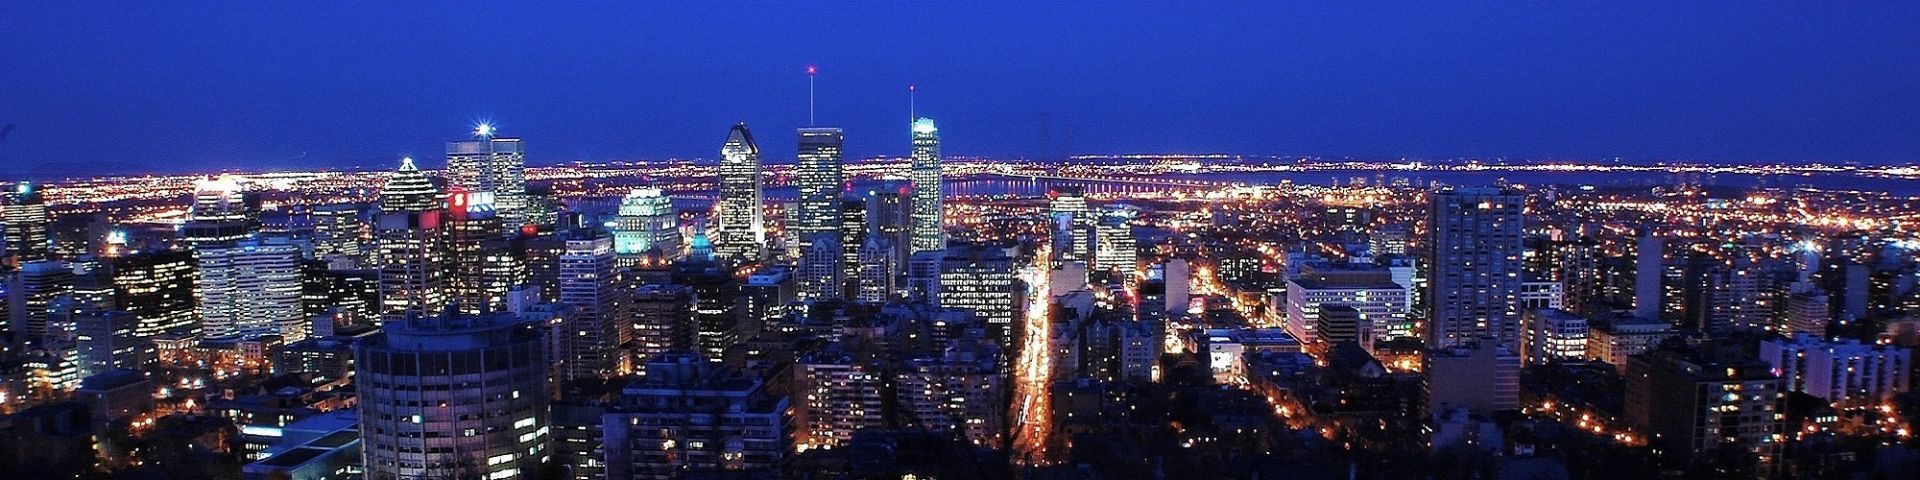 panoramic view of Montréal at night